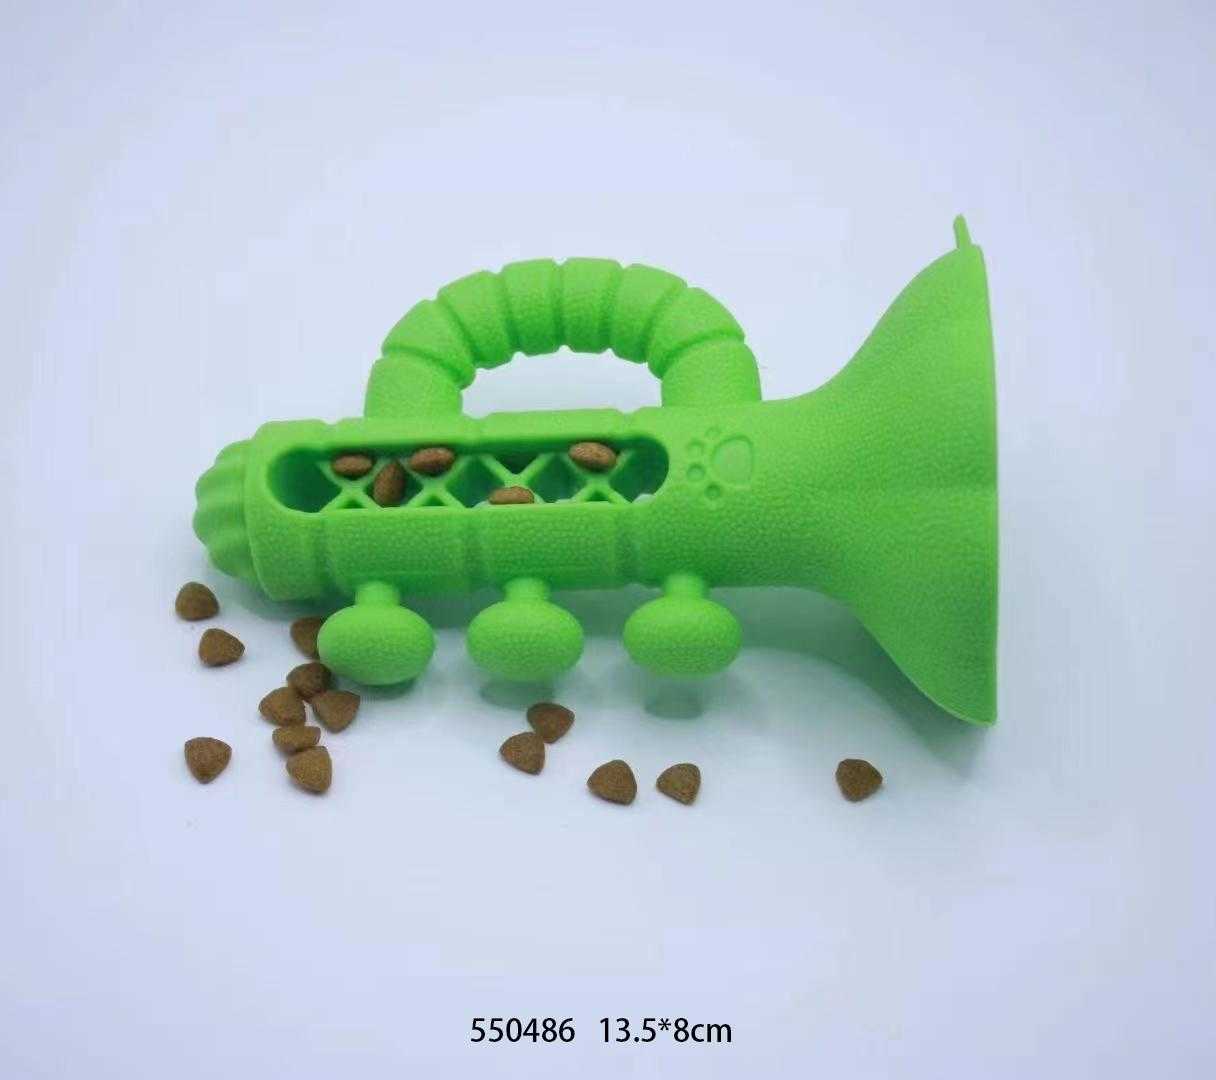 Dog treat toy - 13.5x8cm - 550486